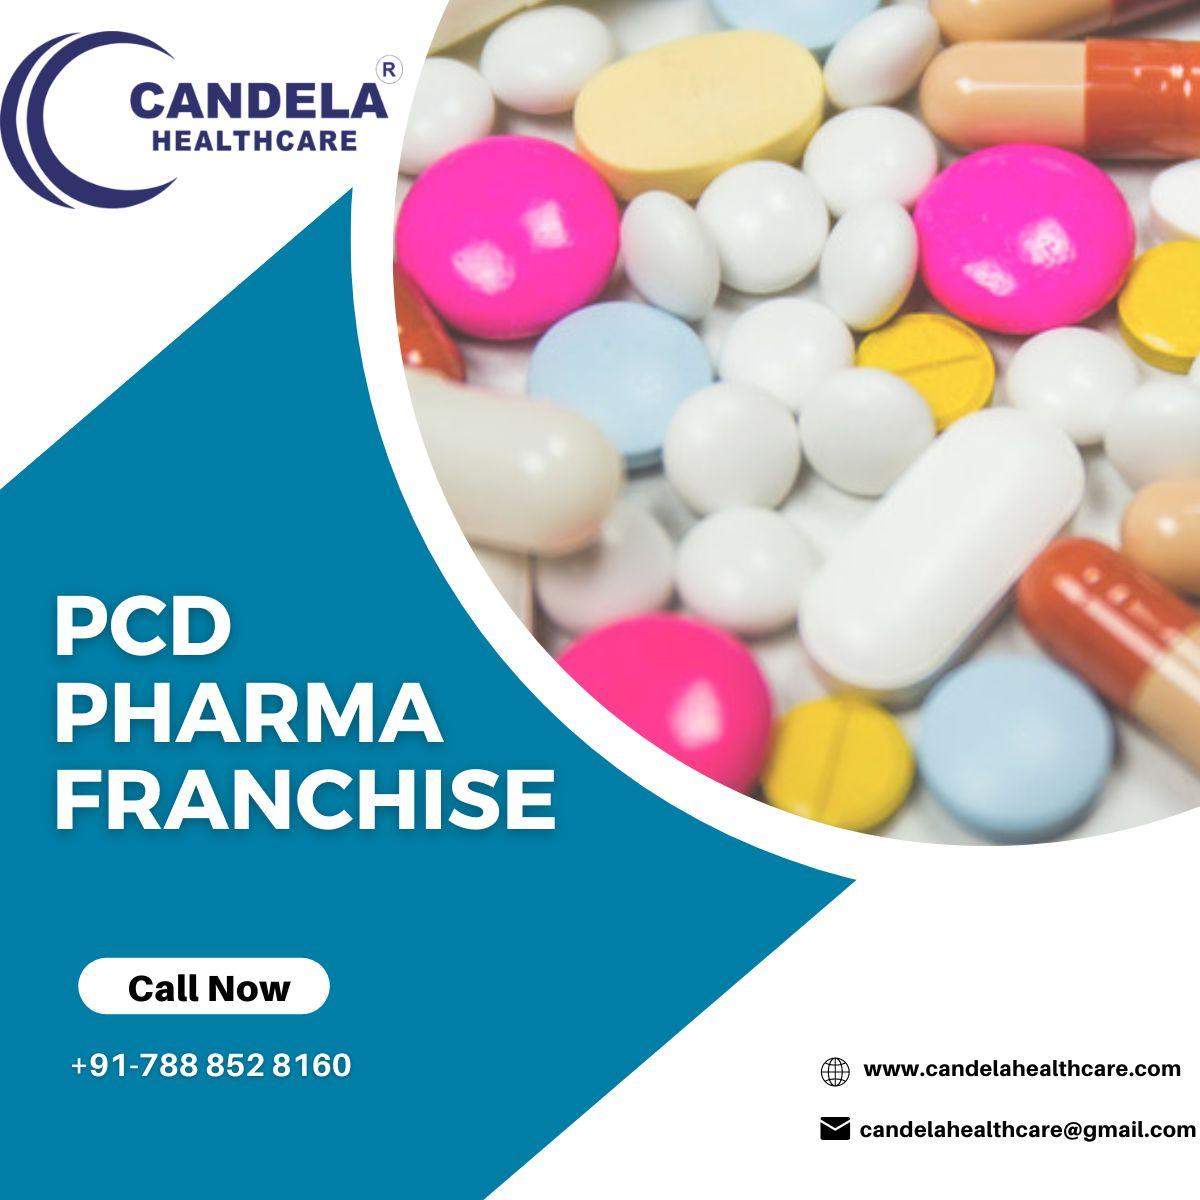 PCD Pharma Franchise - Candela